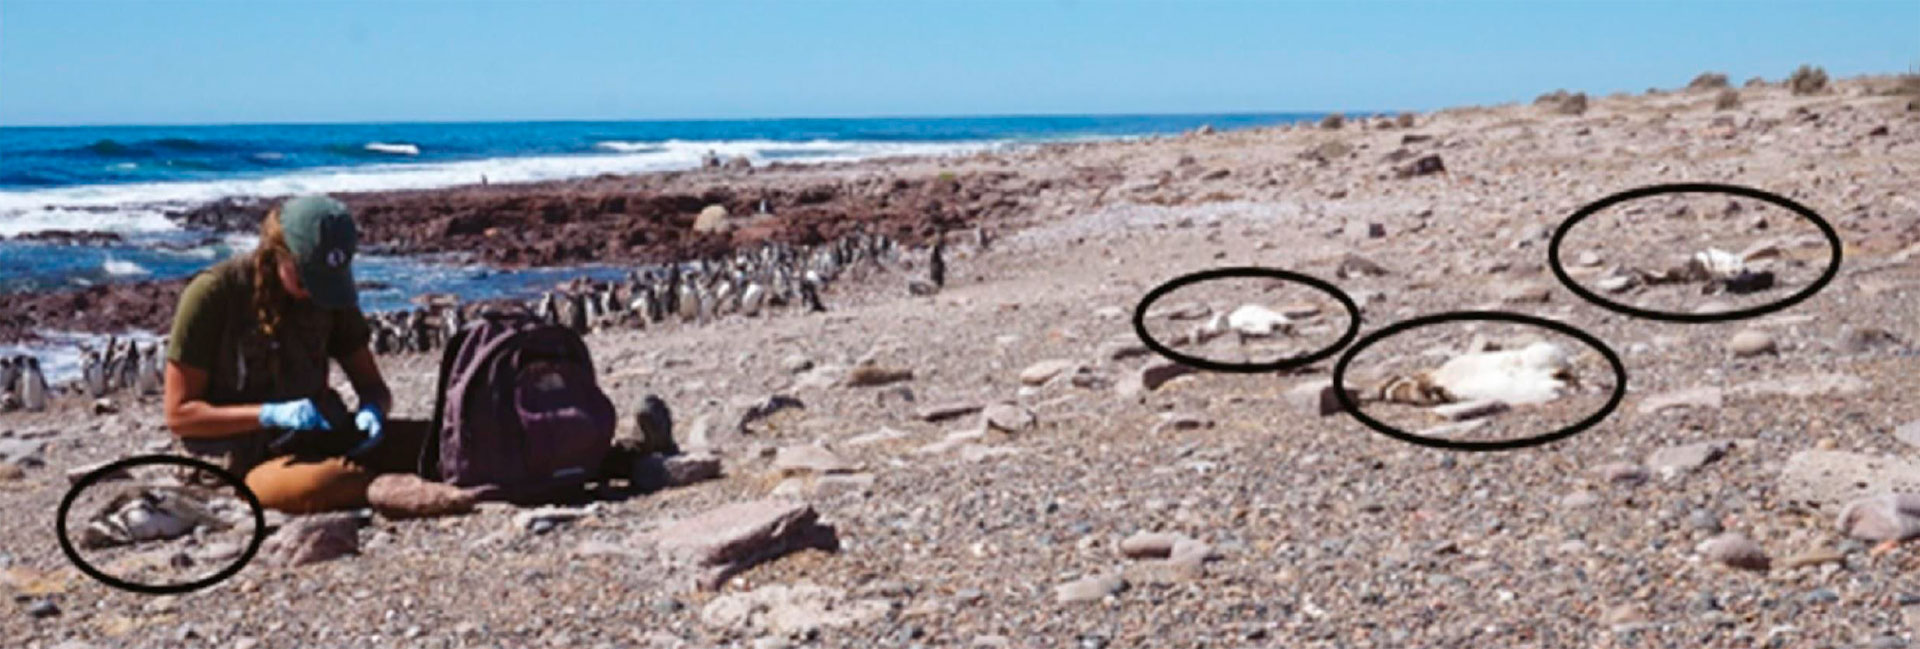 A mediados de enero, fallecieron por el calor más de 300 ejemplares de la especie Magallanes en Punta Tombo